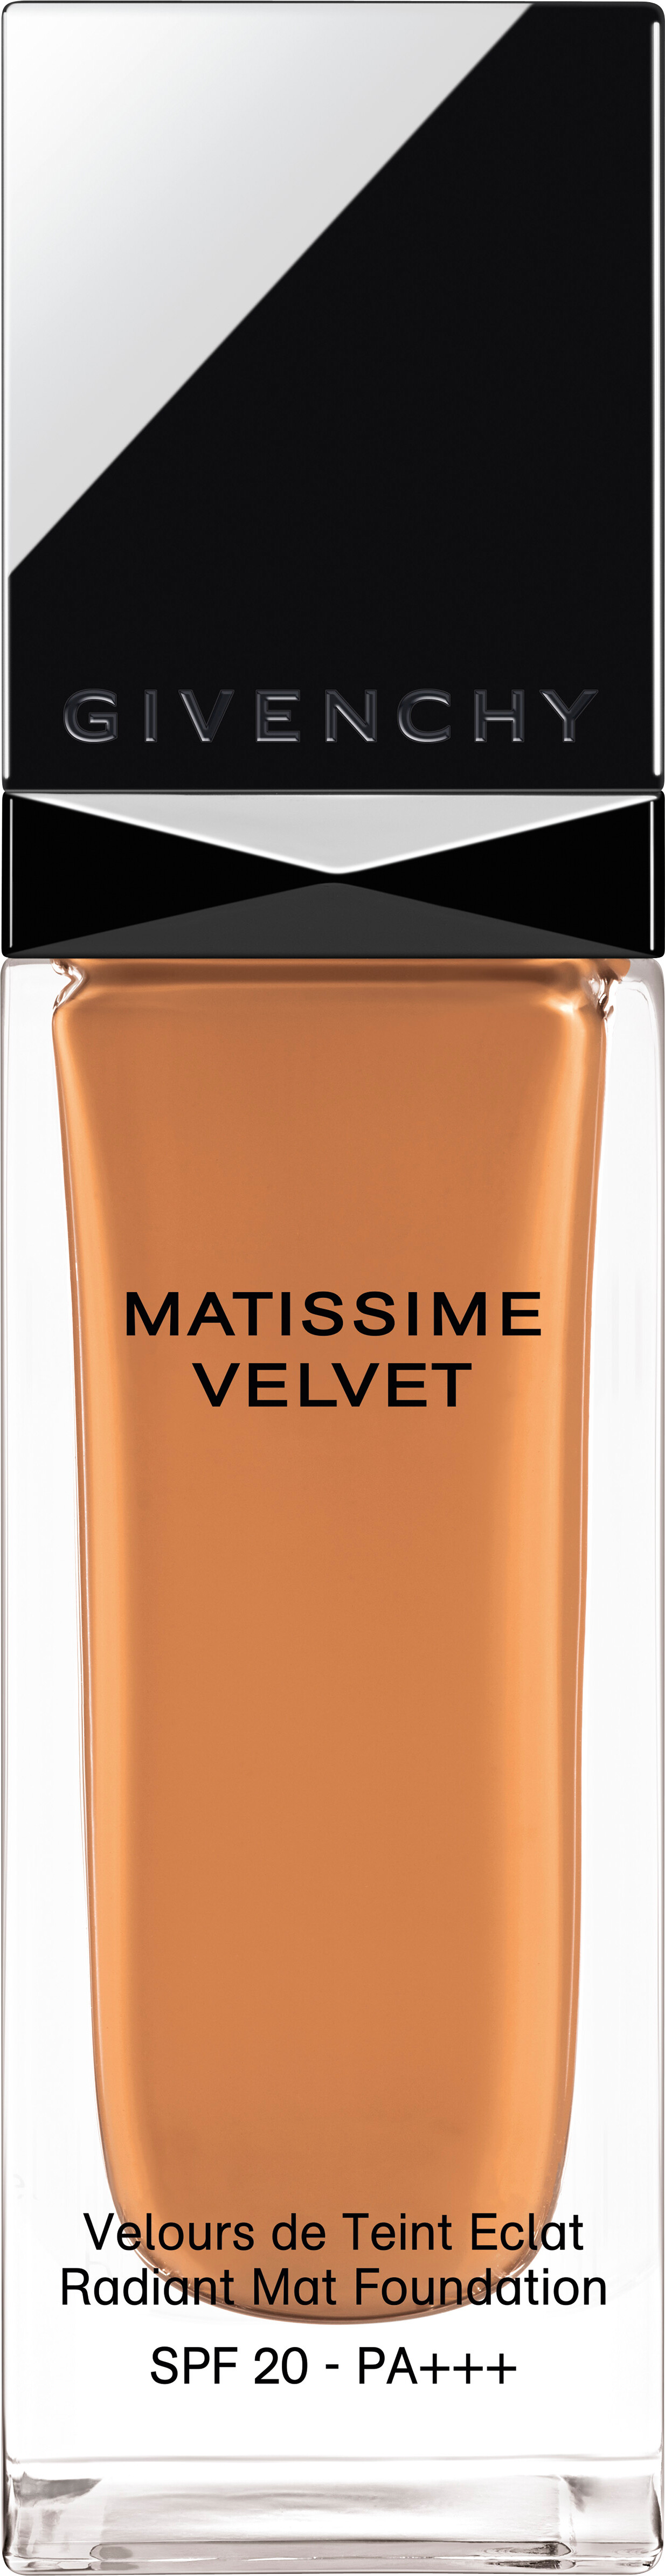 GIVENCHY Matissime Velvet Fluid Foundation SPF20 30ml 08 - Mat Amber